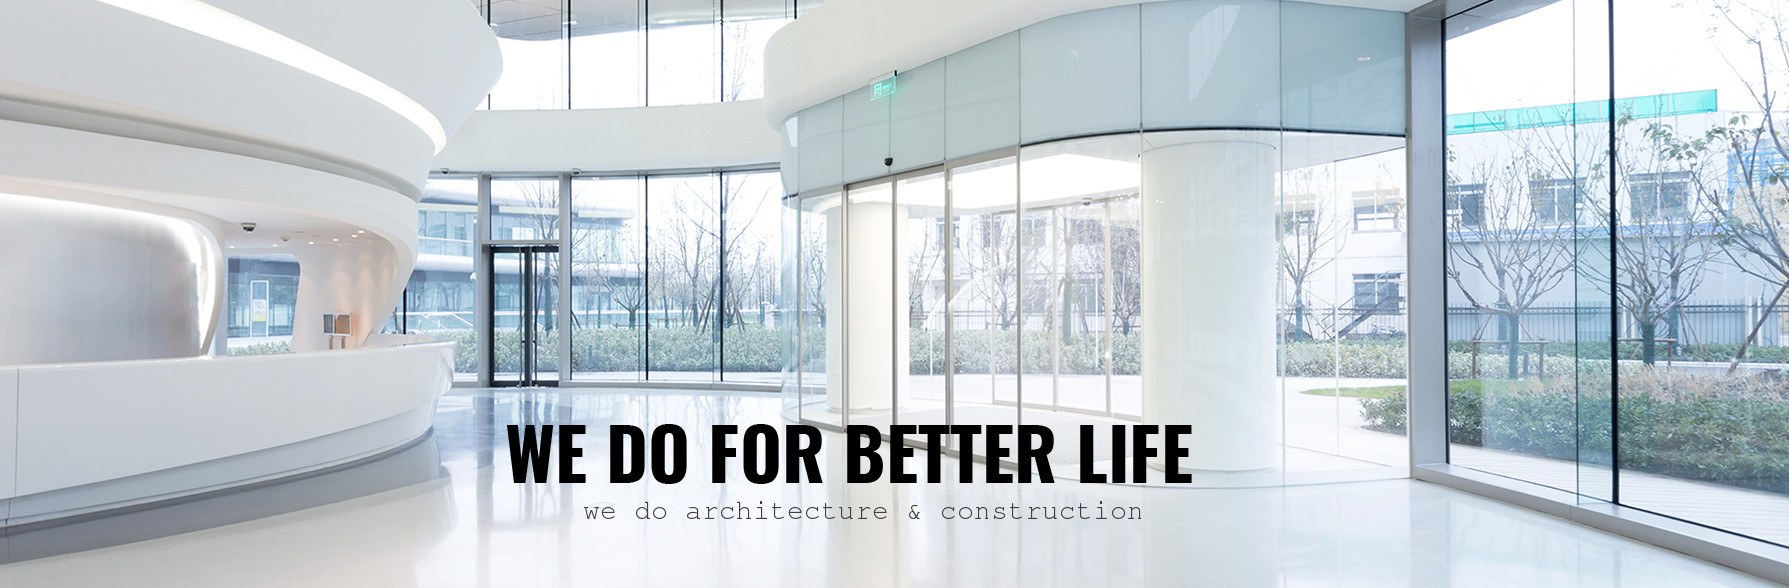 Wedo Architecture & Construction - https://wedo.vn